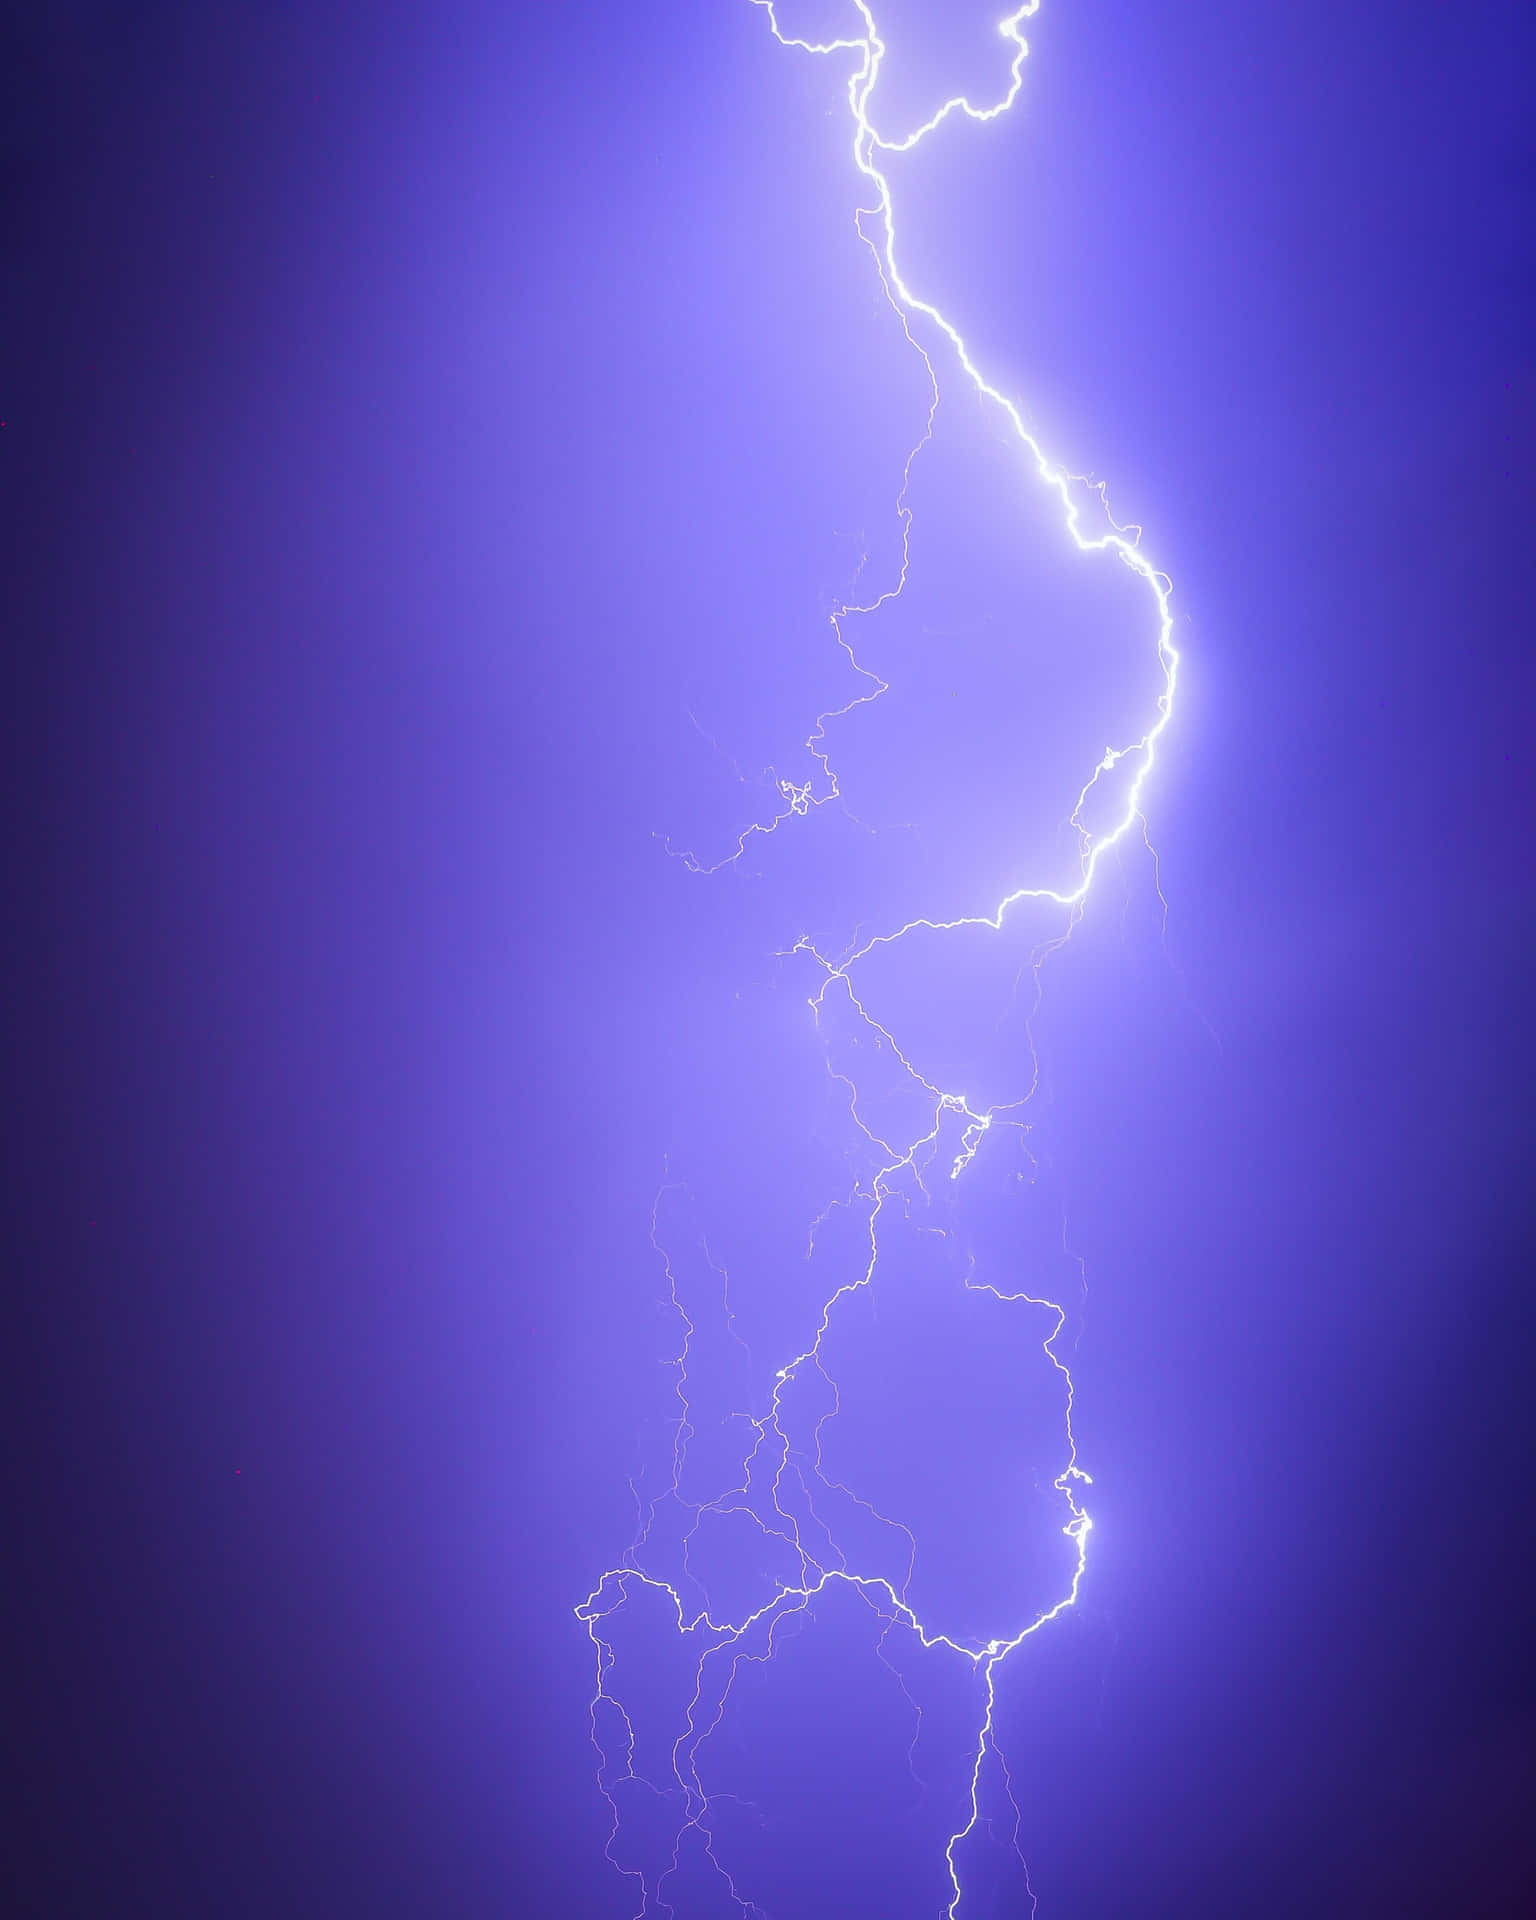 Intense Electric Lightning Strike Wallpaper